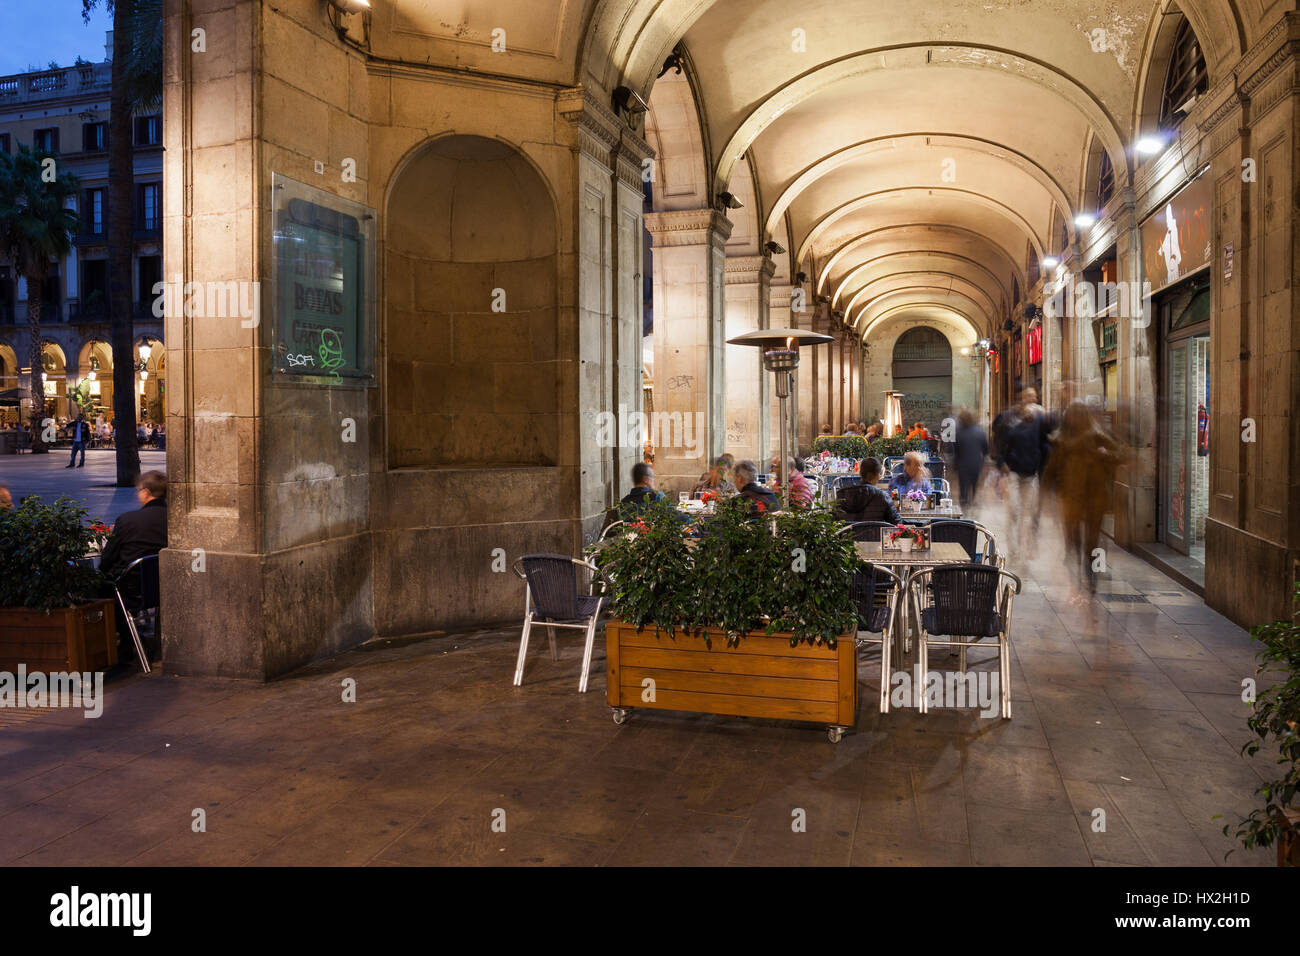 Arcade arcuata di Placa Reial di Barcellona di notte, Royal Square nel centro storico della città, Barri Gotic Quarter, Catalogna, Spagna Foto Stock